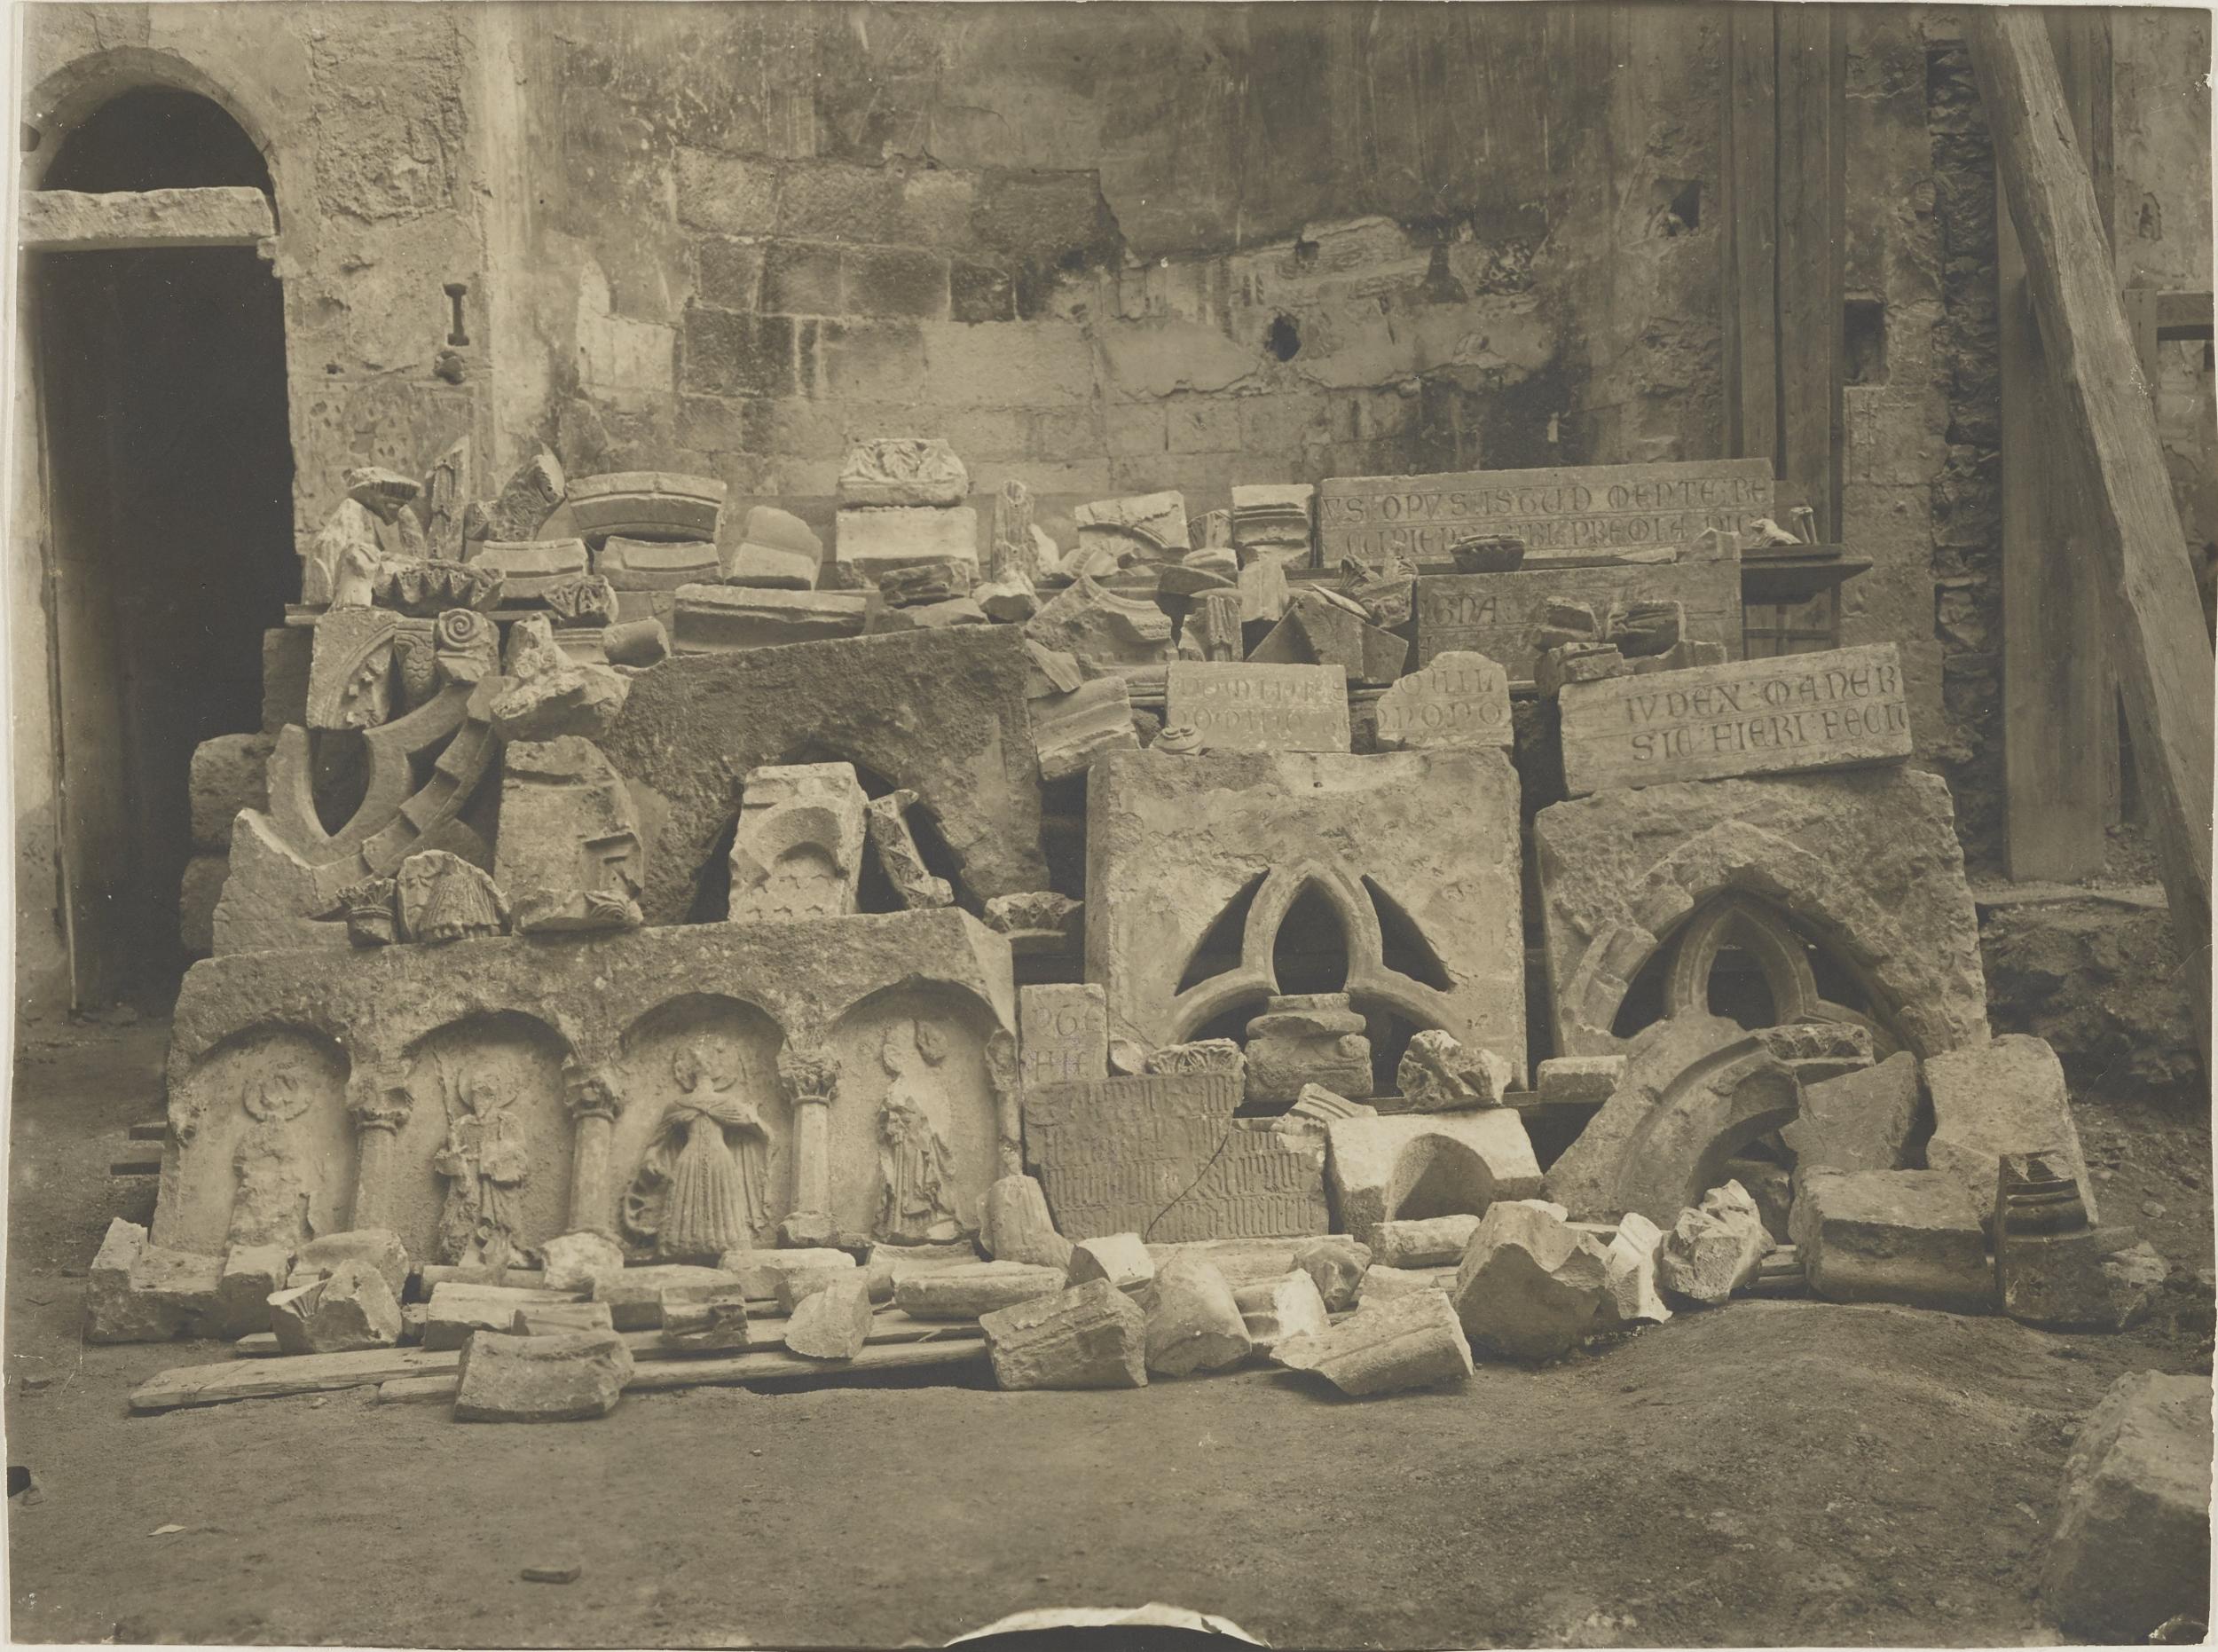 Fotografo non identificato, Conversano - Cattedrale, frammento di decorazione di portale, prima dei restauri del 1914, 1901-1925, gelatina ai sali d'argento/carta,  MPI155342